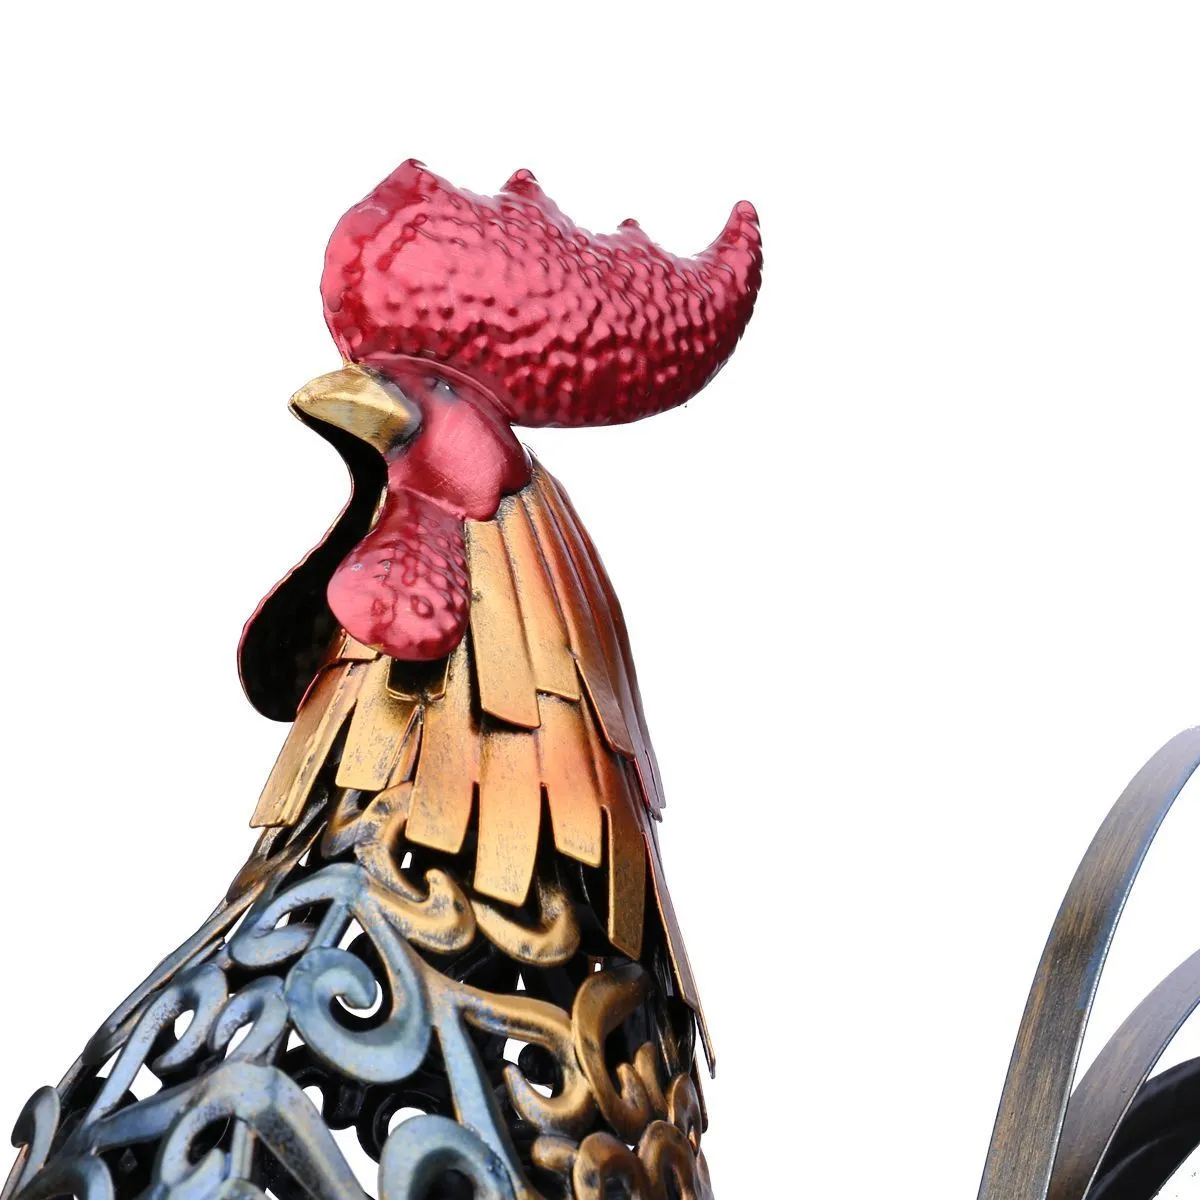 Tooarts Métal Figurine Coq De Fer Articles De Décoration Vivid Coloré Figurine Artisanat Cadeau Pour La Décoration De La Maison Accessoires T200331